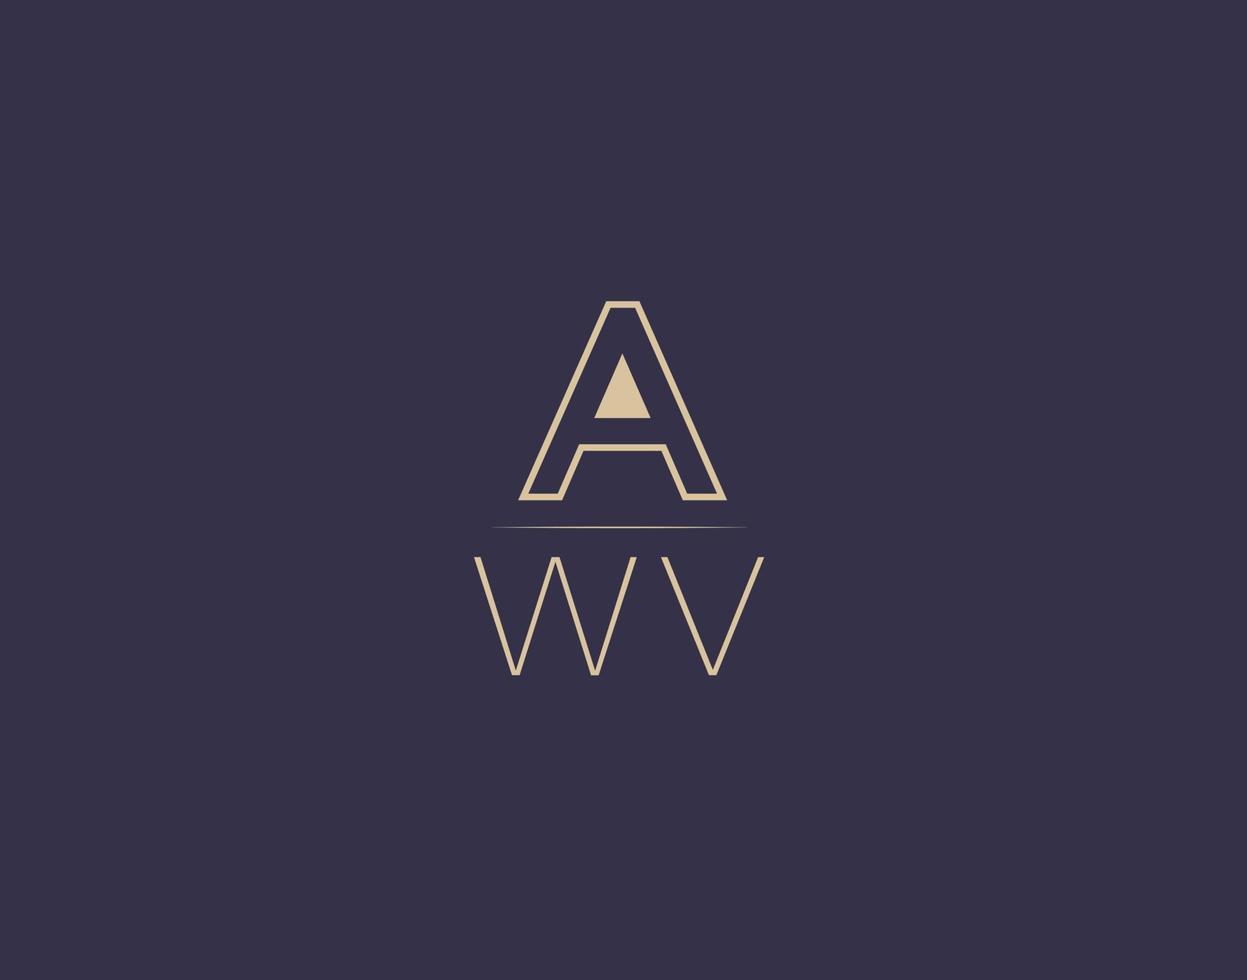 awv carta logo diseño moderno minimalista vector imágenes